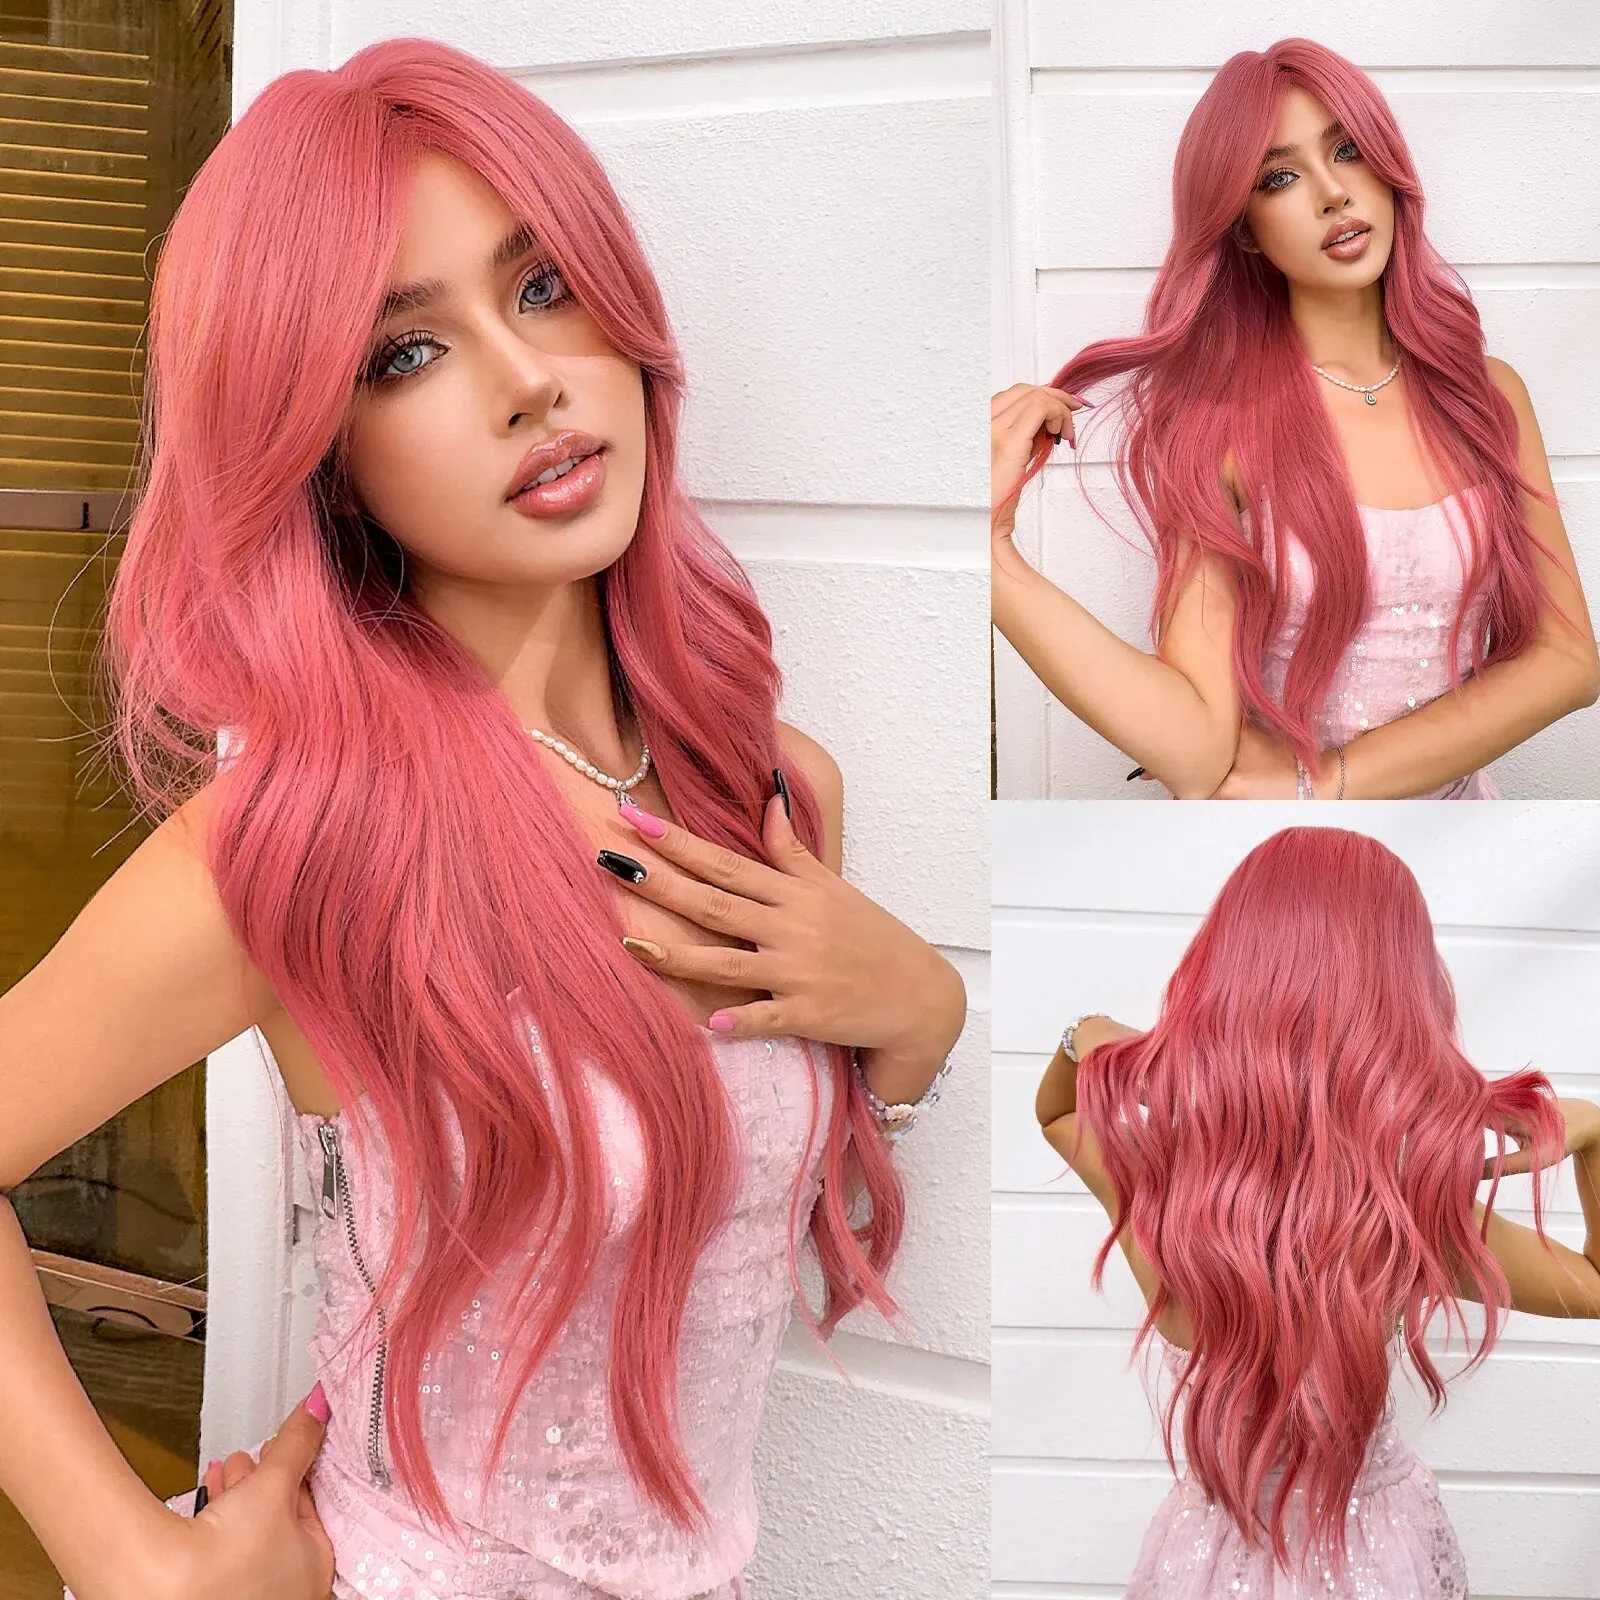 Perucas sintéticas longas perucas onduladas de água sintética melancia vermelho rosa peruca de cabelo com franja lateral para meninas e senhoras uso diário festa cosplay 240328 240327